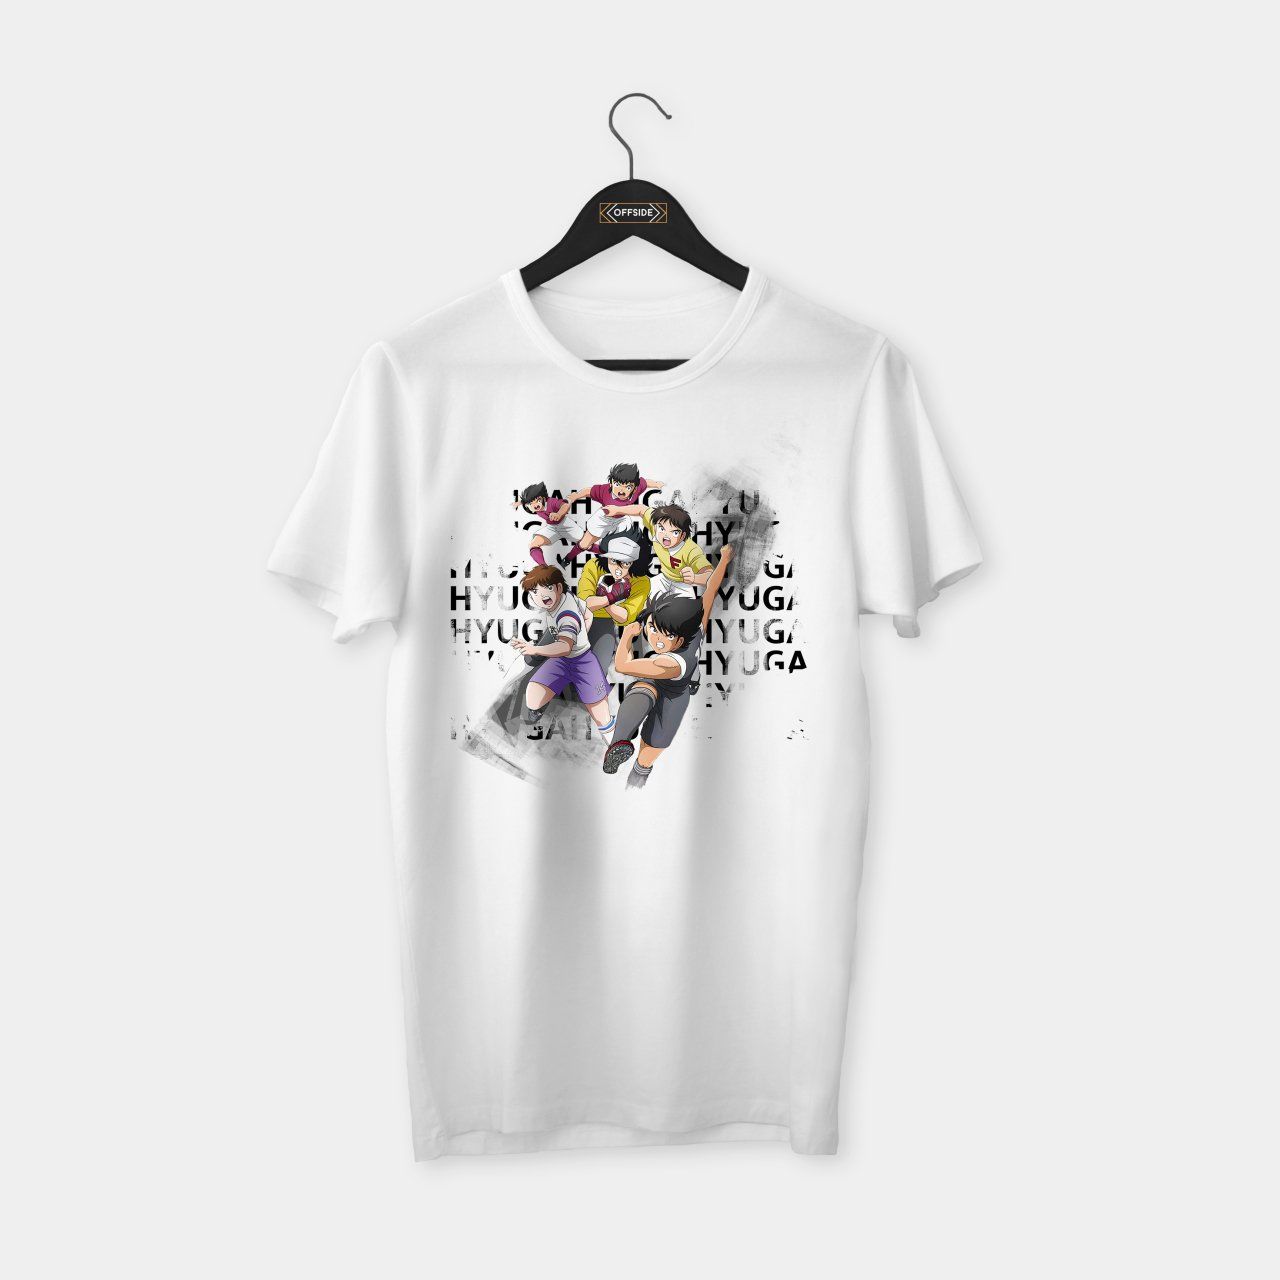 Hyuga & Others T-shirt